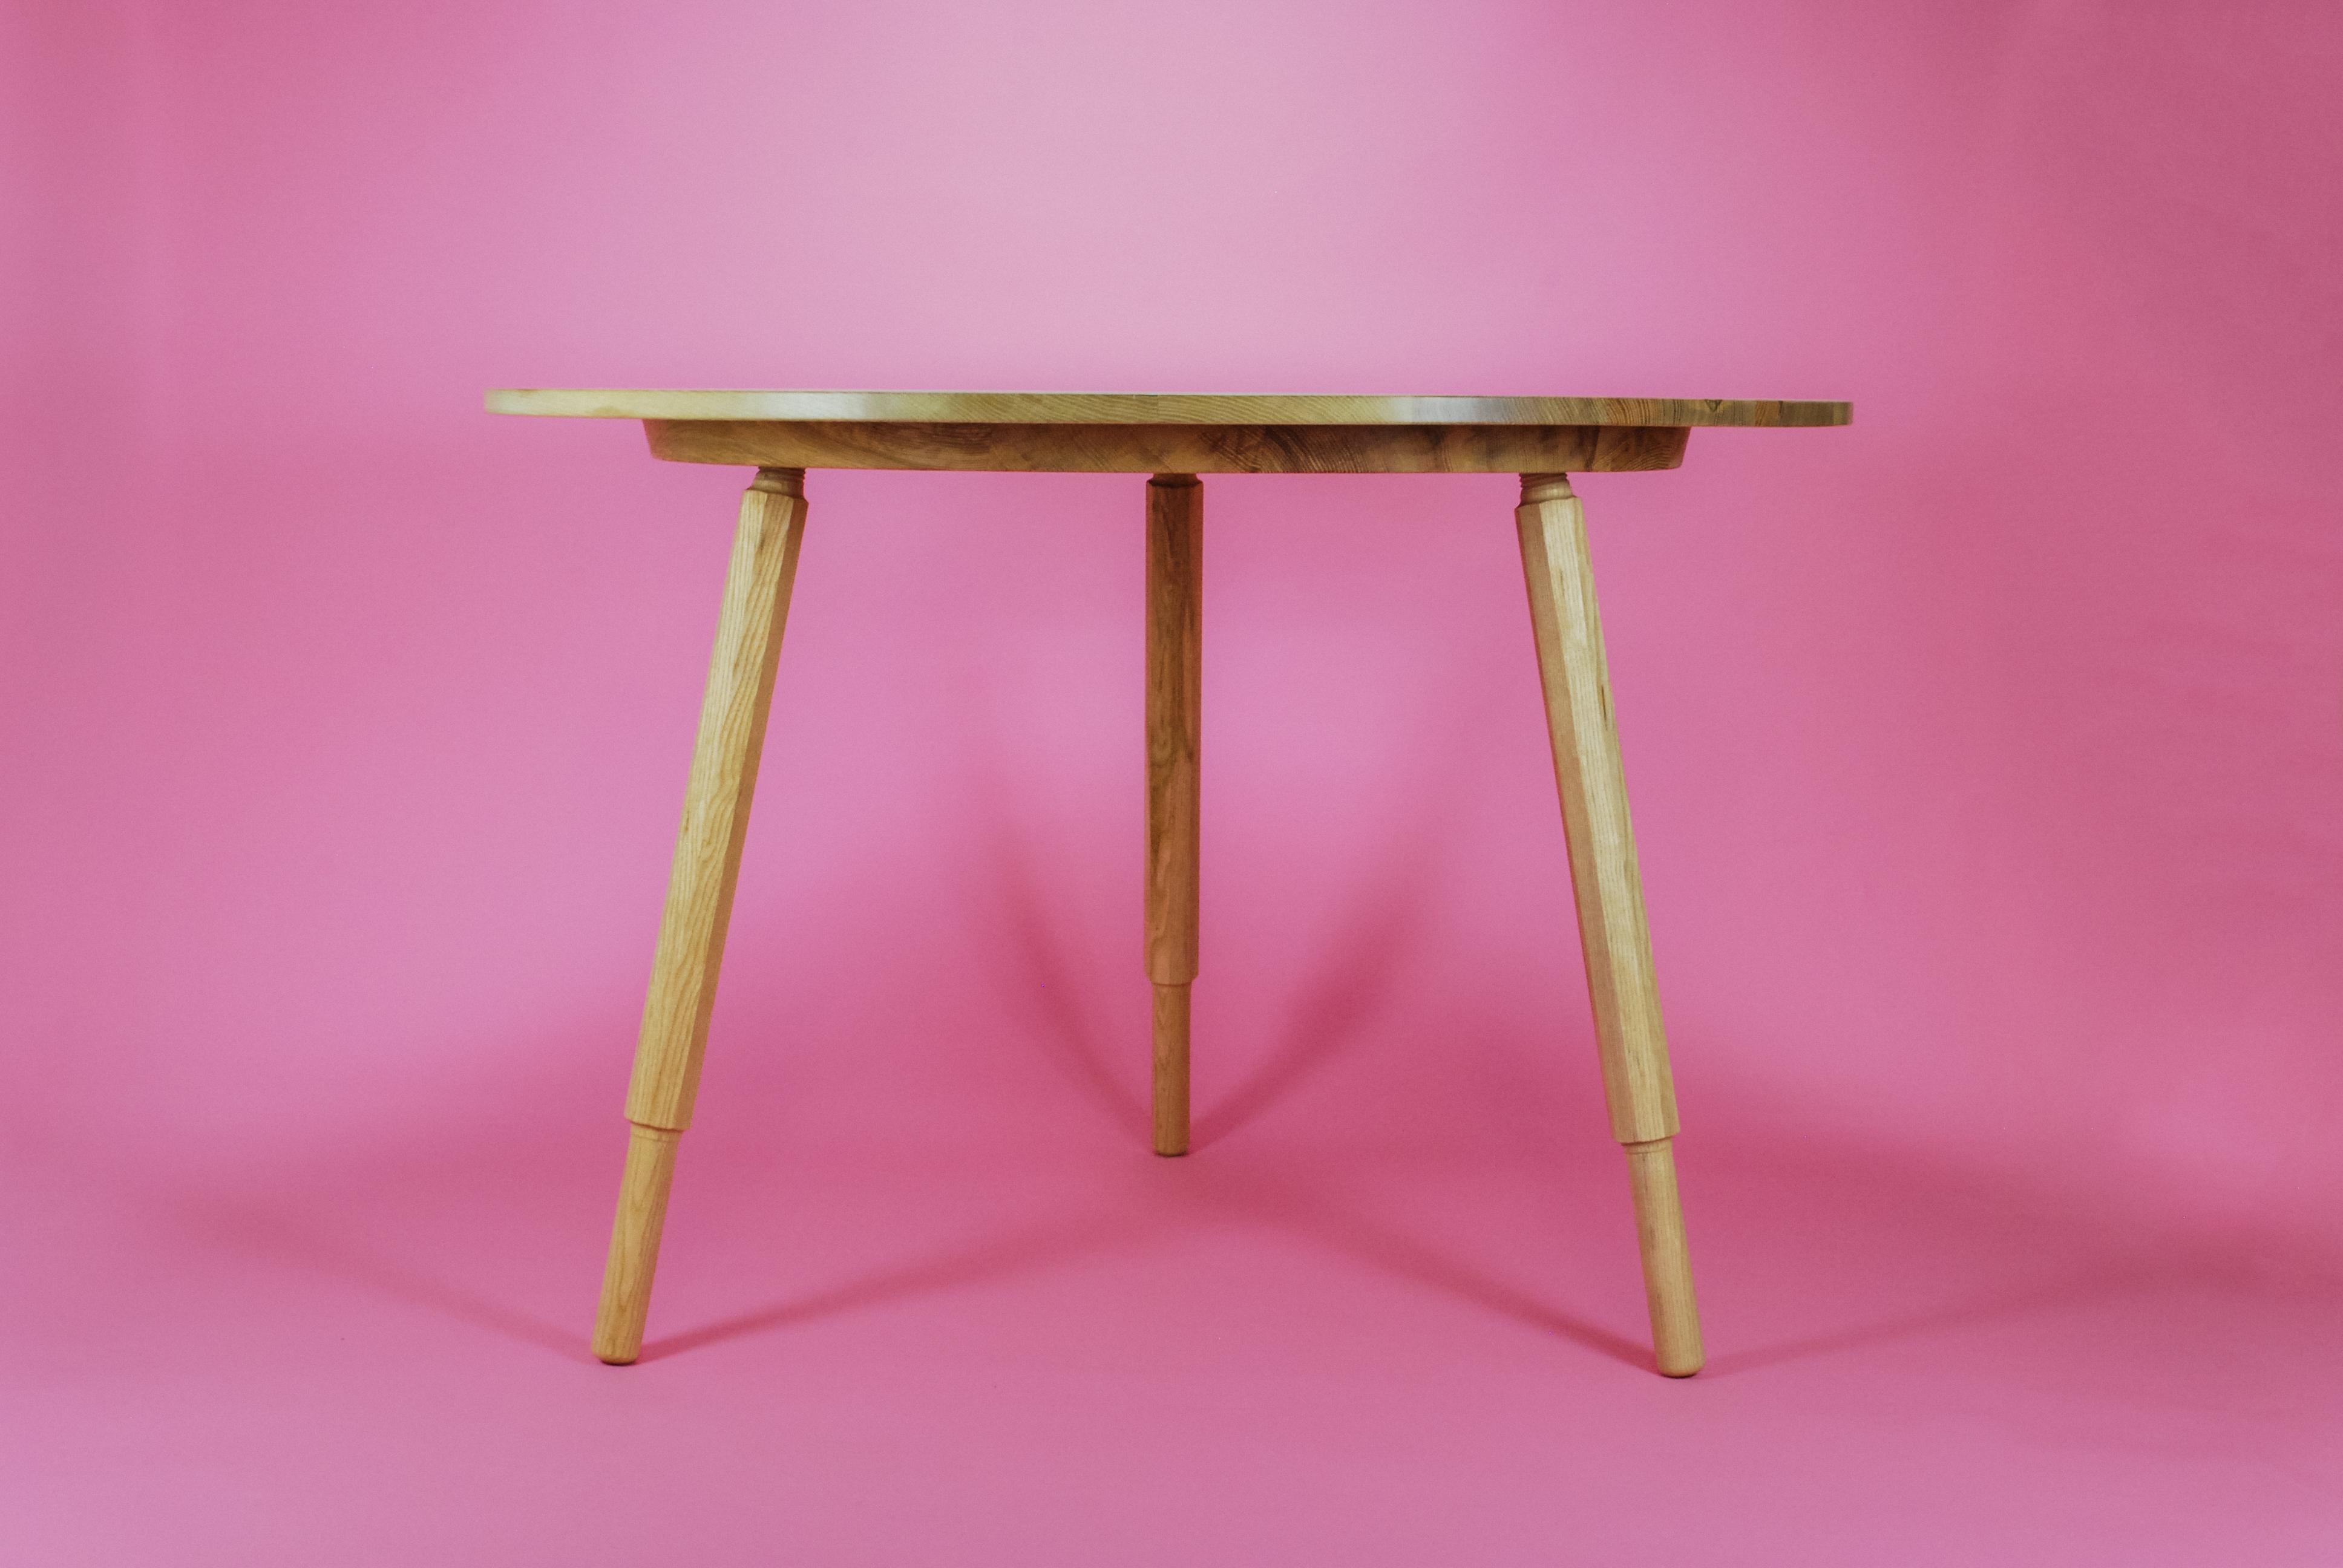 Table de salle à manger ronde en frêne anglais, fabriquée à la main, avec pieds vissés.
Les pieds tournés à la main sont livrés séparément et se vissent simplement au plateau de la table.
Les pieds sont conçus avec une forme octogonale unique, avec